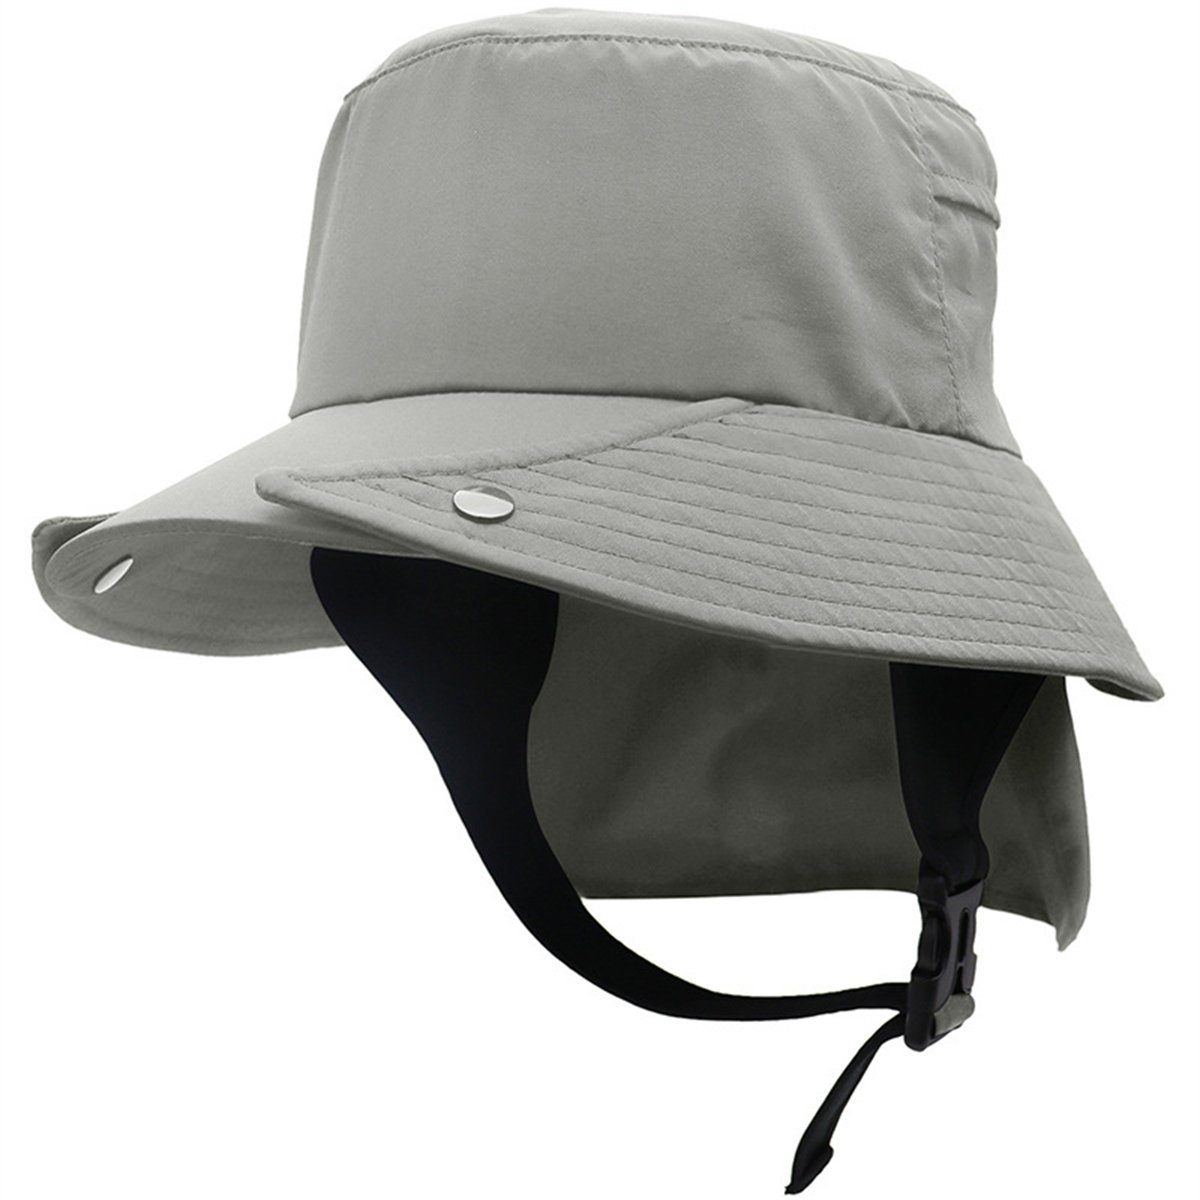 Discaver Schiebermütze UPF50+ abnehmbarer Fischerhut mit großer Krempe Schnell trocknende Mütze für Rad- und Outdoor-Abenteuer hellgrau